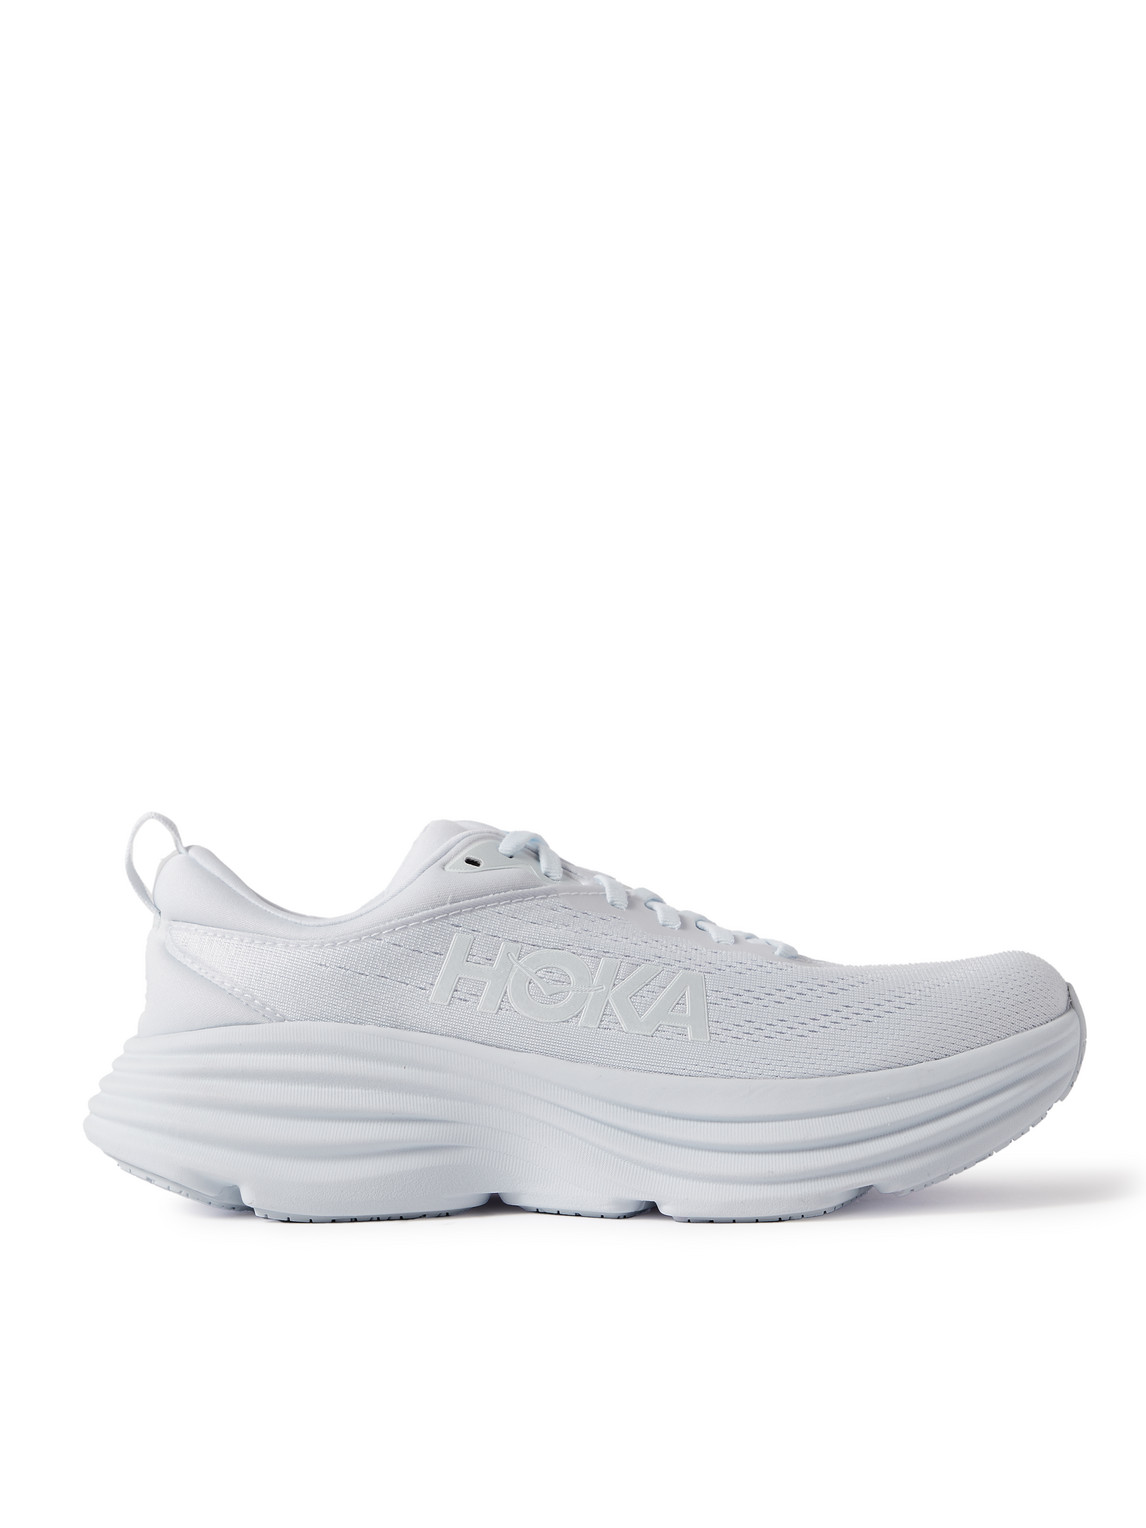 Hoka One One Bondi 8 Running Sneakers In White